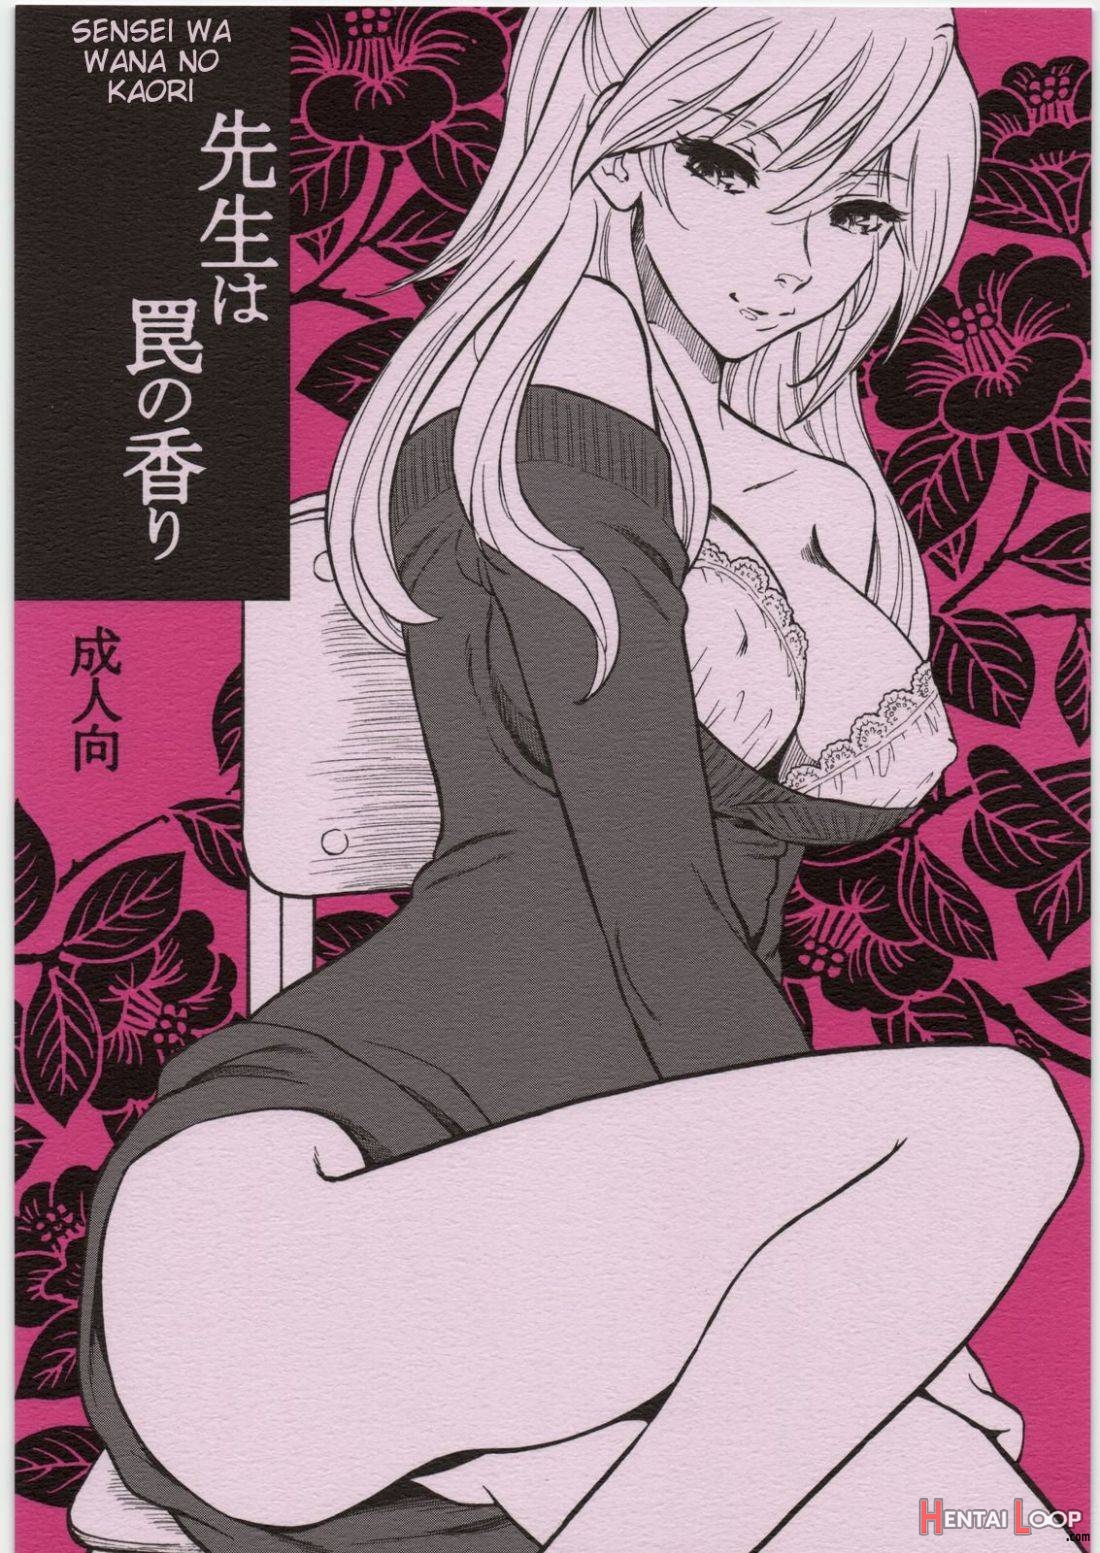 Sensei wa Wana no Kaori page 1